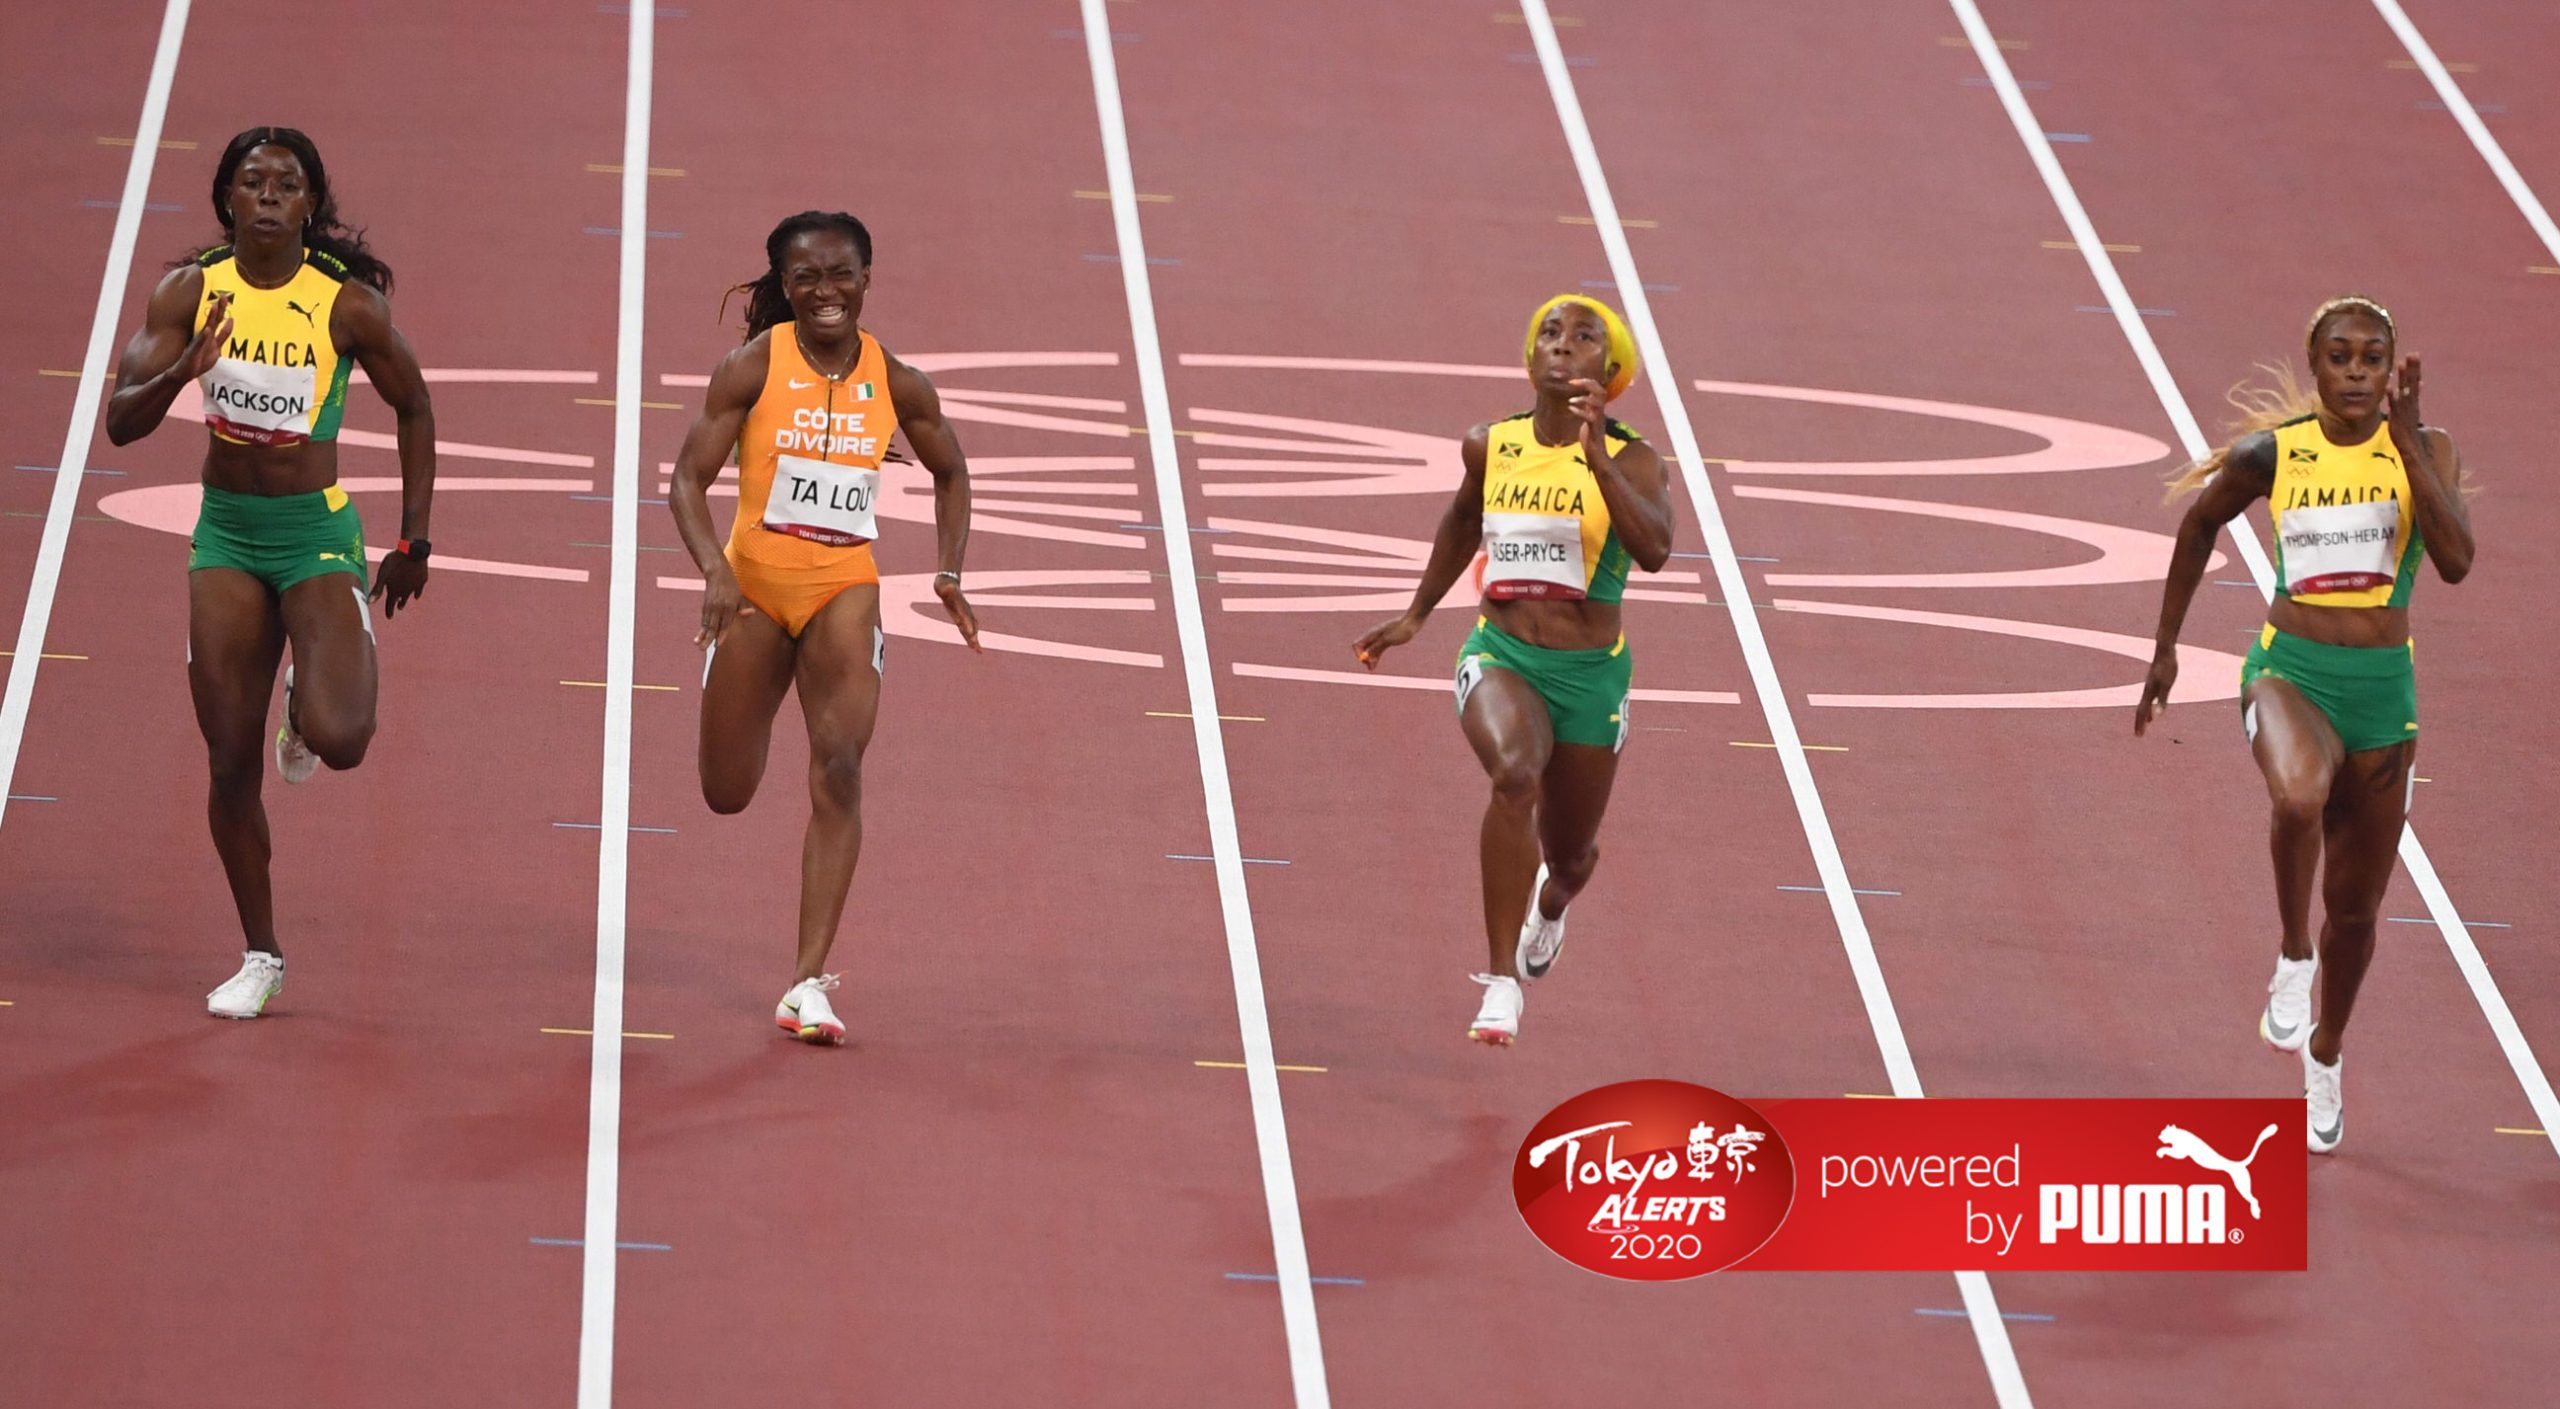 Jamaica get 1-2-3 in Tokyo 2020 women's 100m final